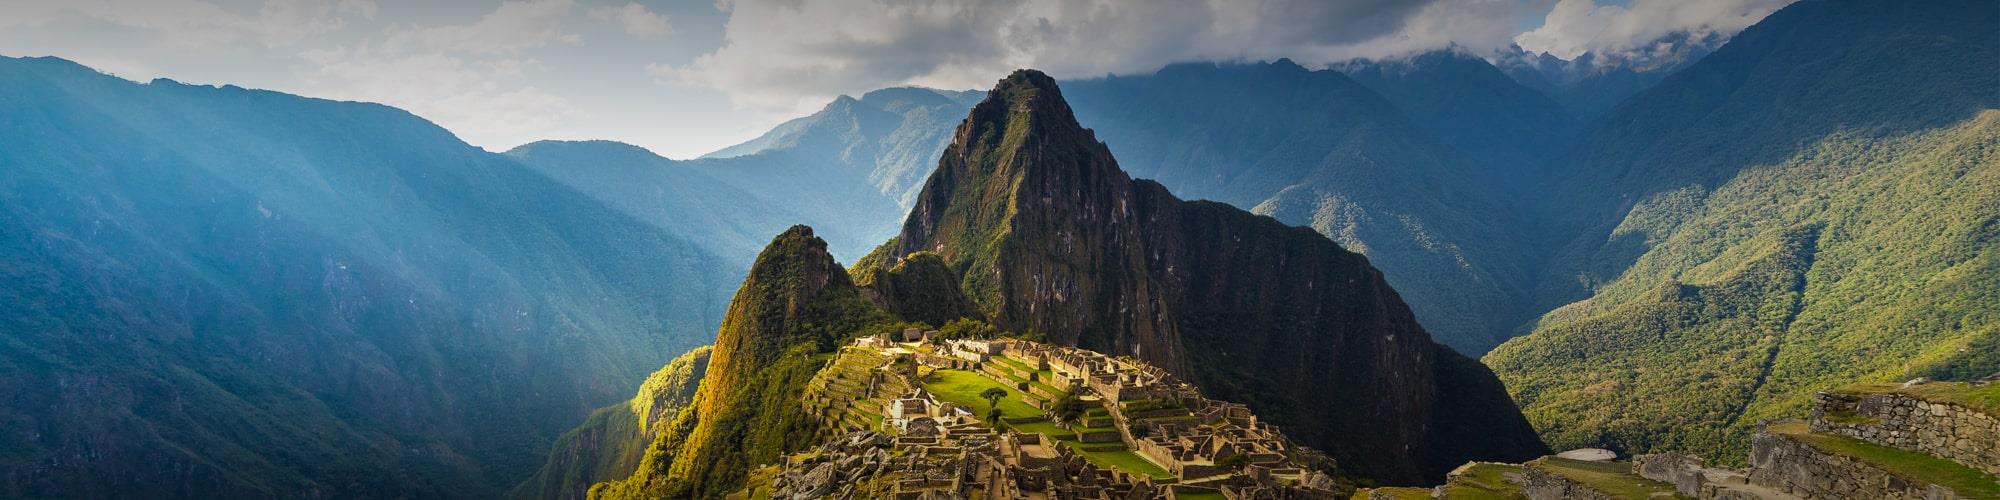 Le Pérou n'attend pas ! © fbxx